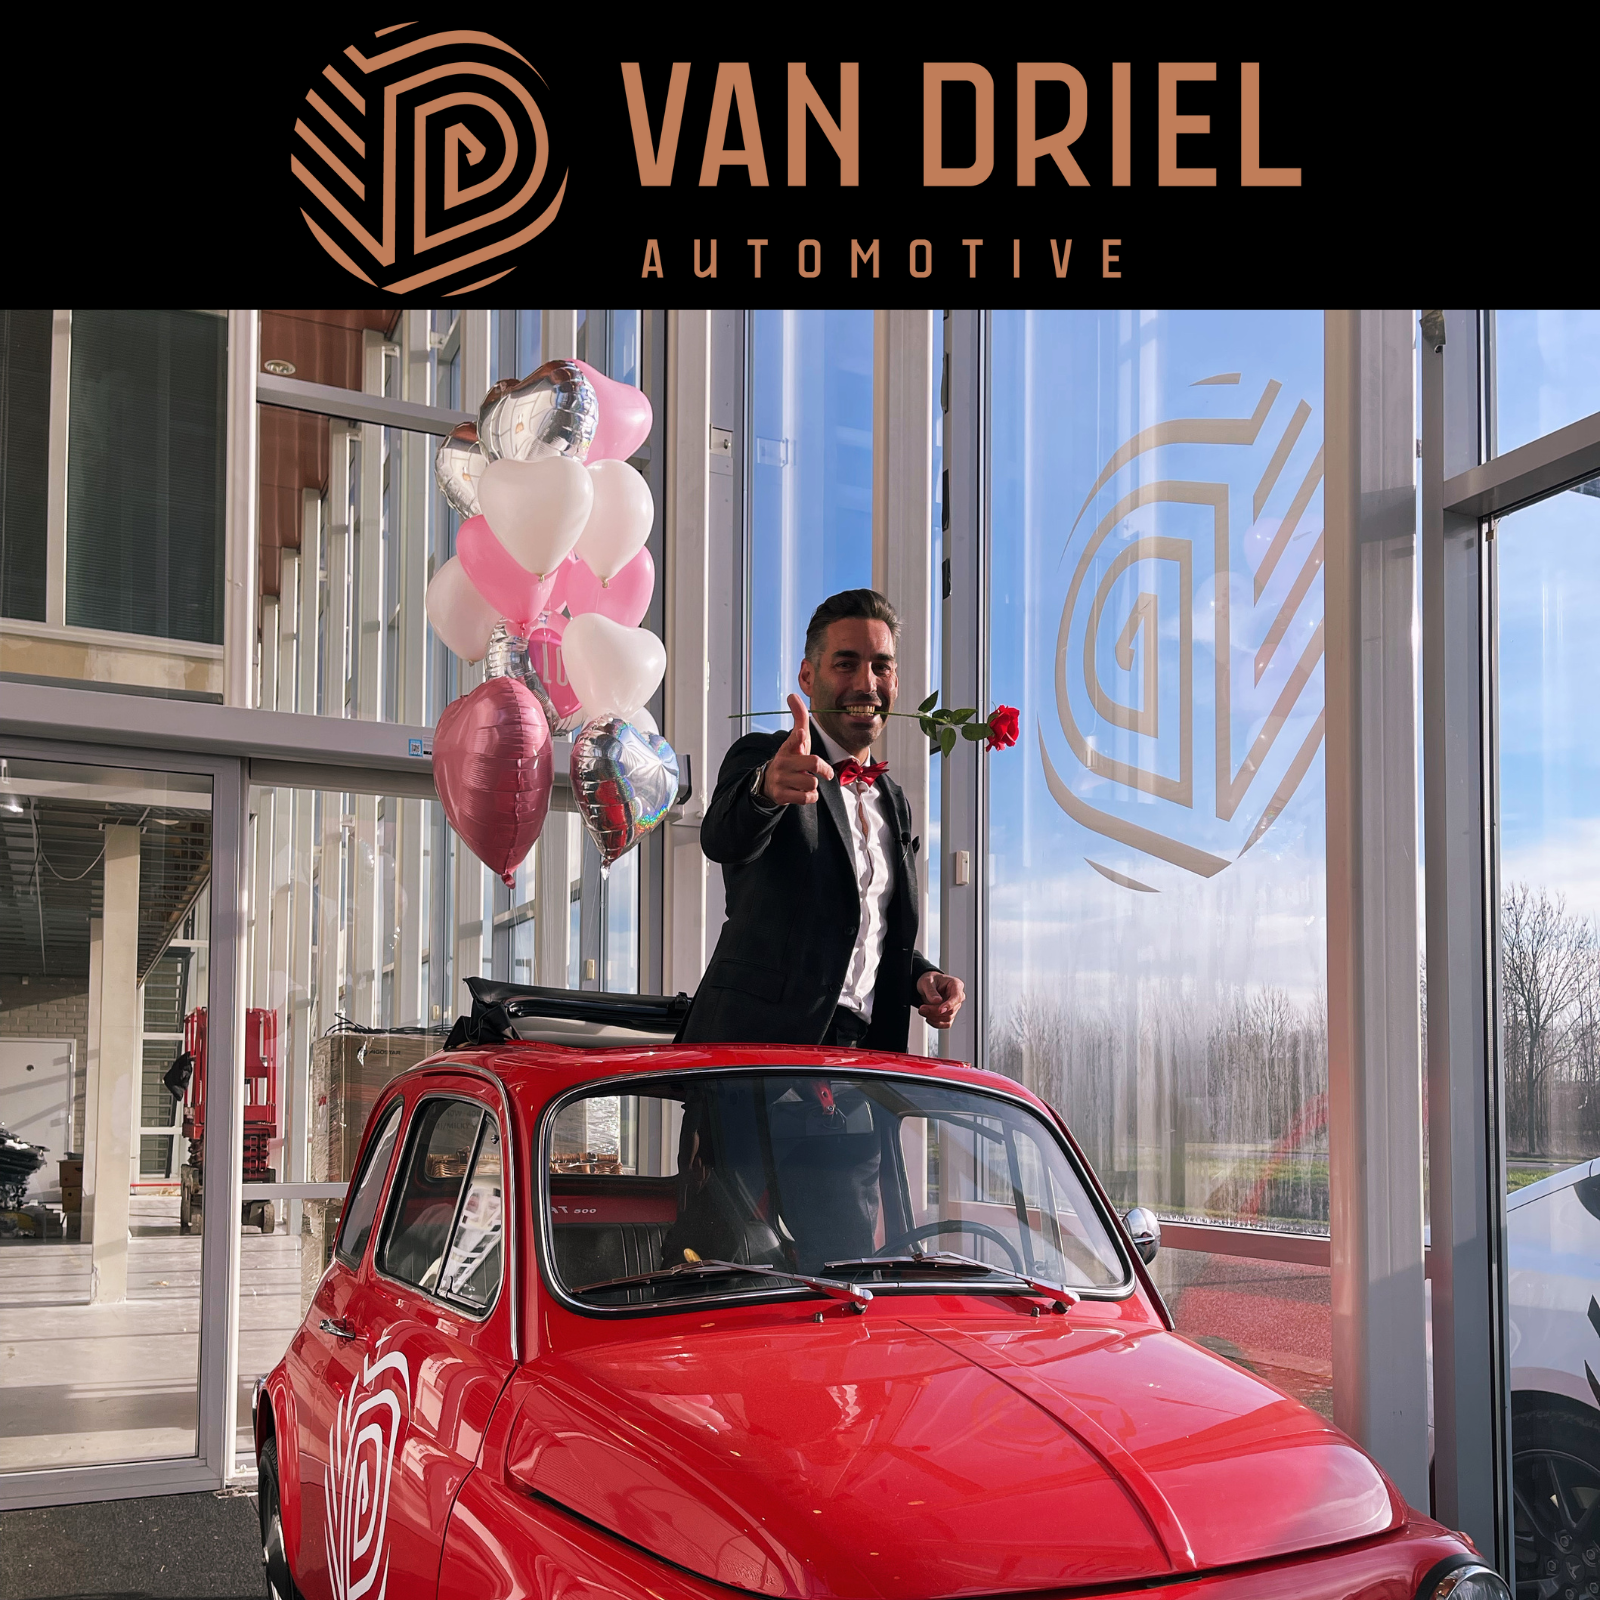 Vier de Liefde met Van Driel Automotive!